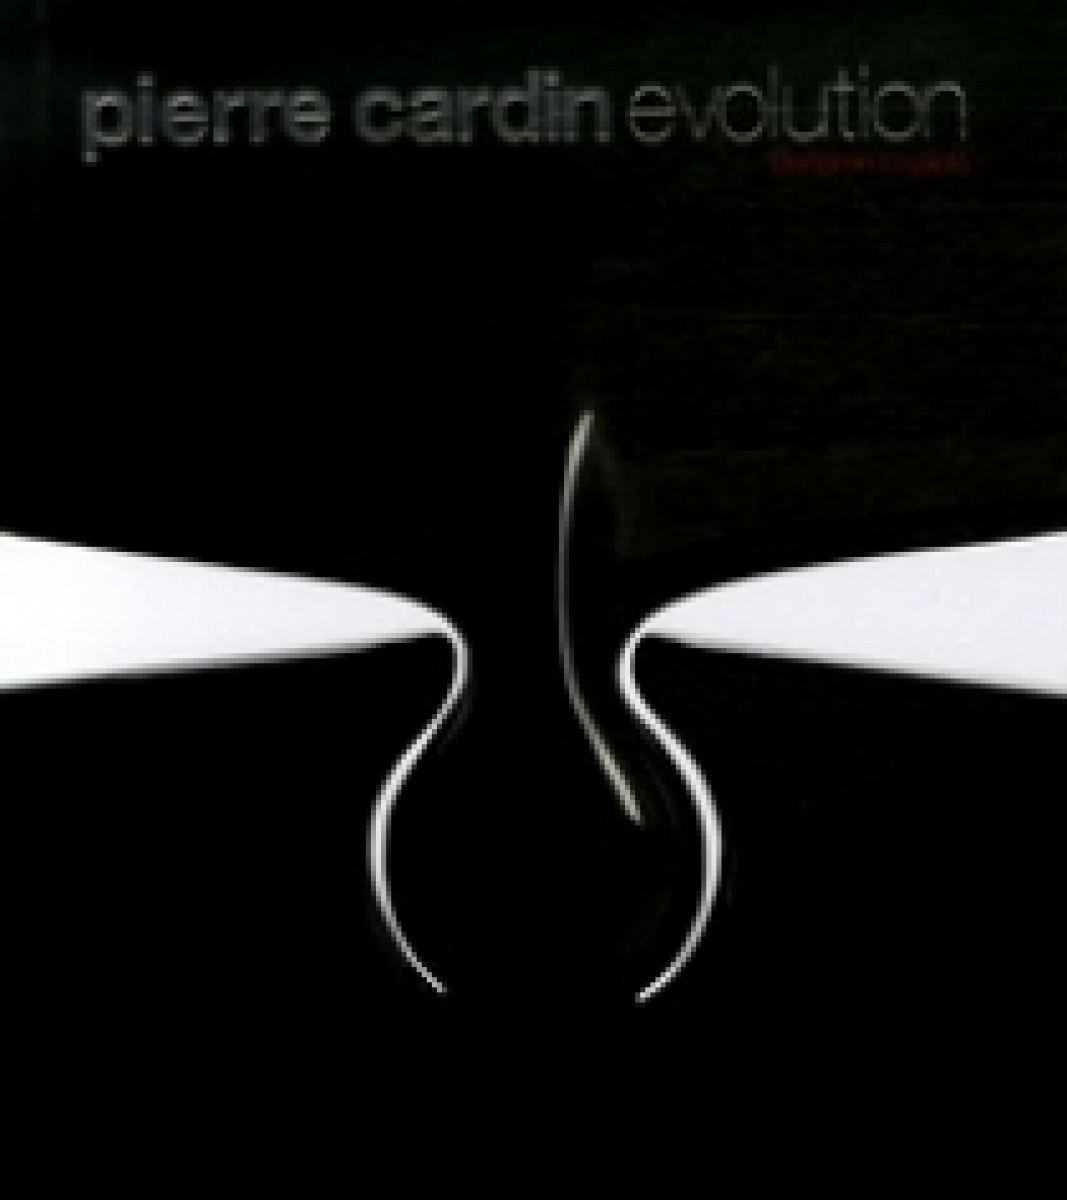 Benjamin L. Pierre Cardin Evolution 